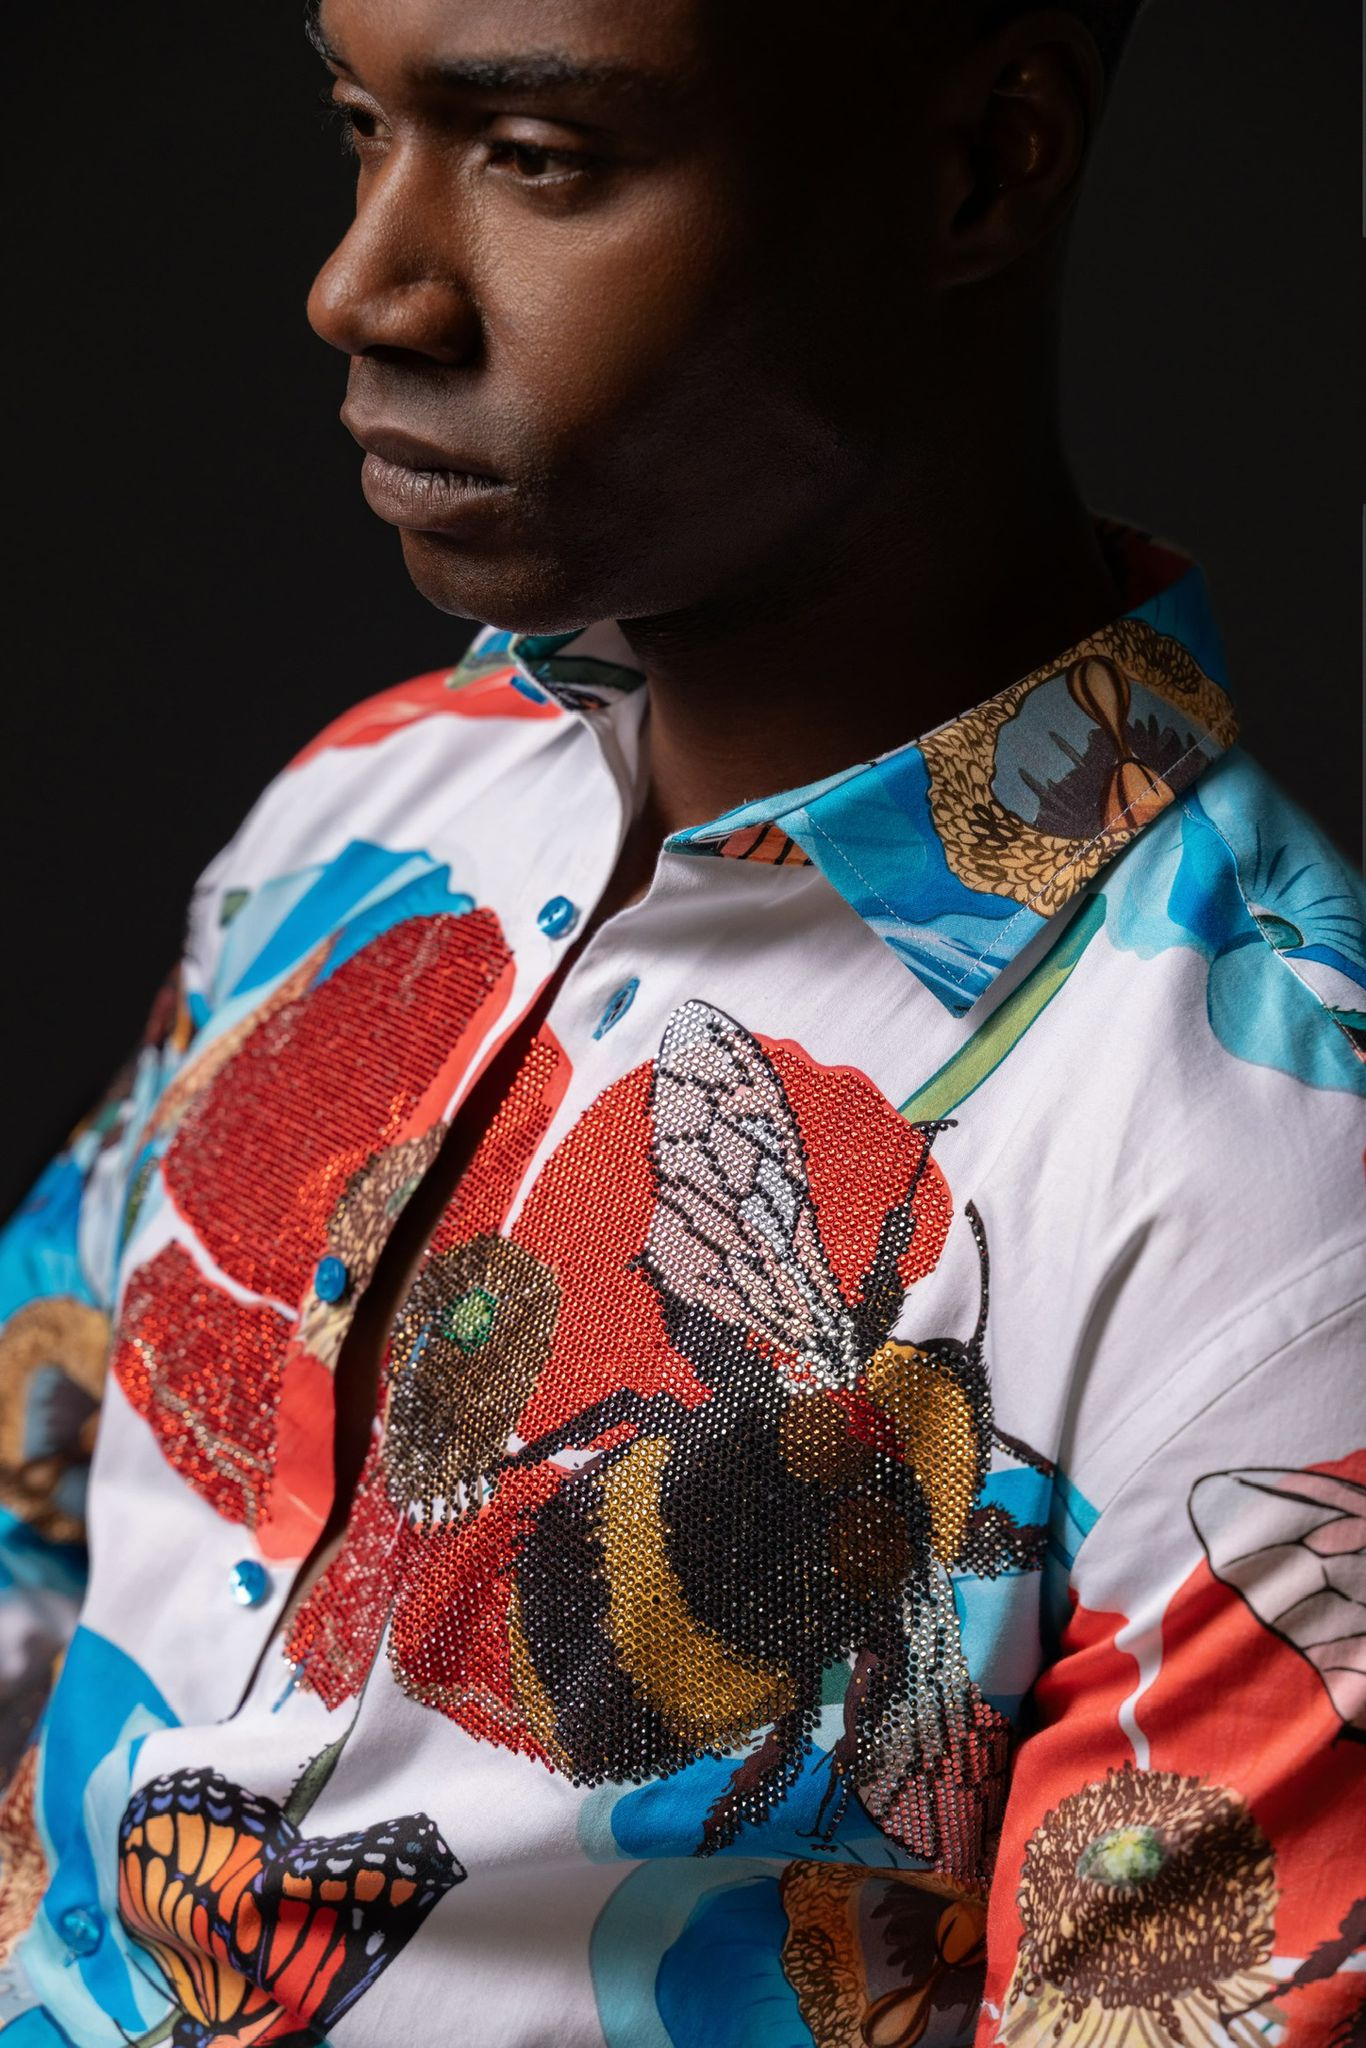 Butterfly Garden Luxe Men's Casual Shirt